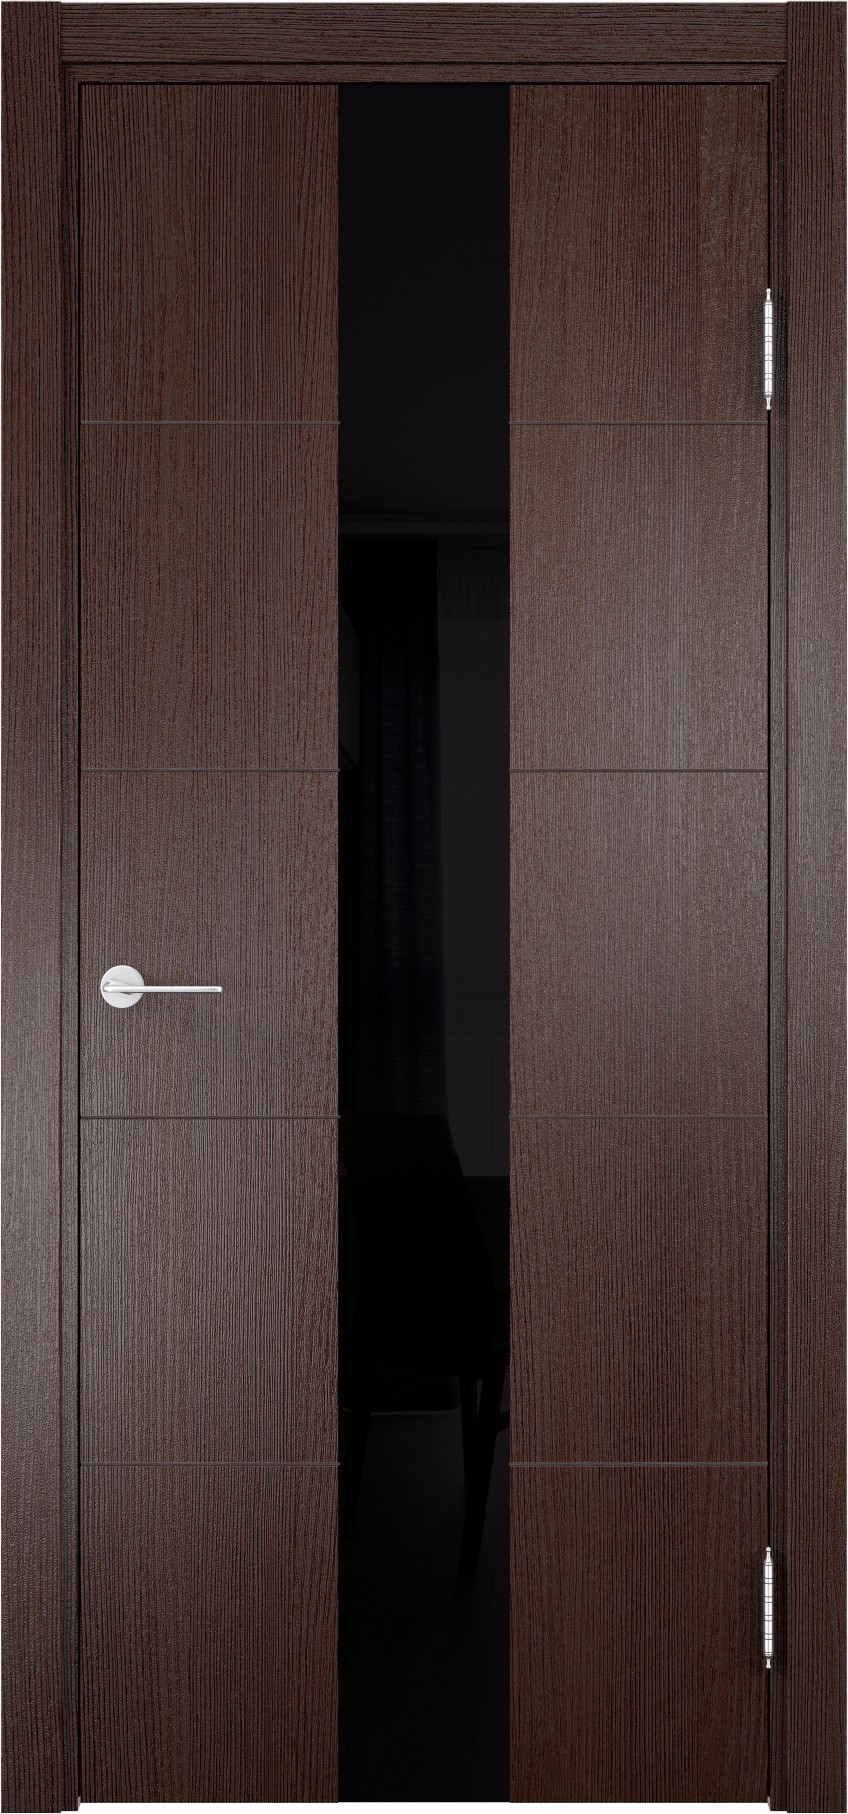 93718185 Дверь межкомнатная Турин (14) остекленная полипропилен цвет дуб графит вералинга 200 x 70 см STLM-0554459 CASAPORTE